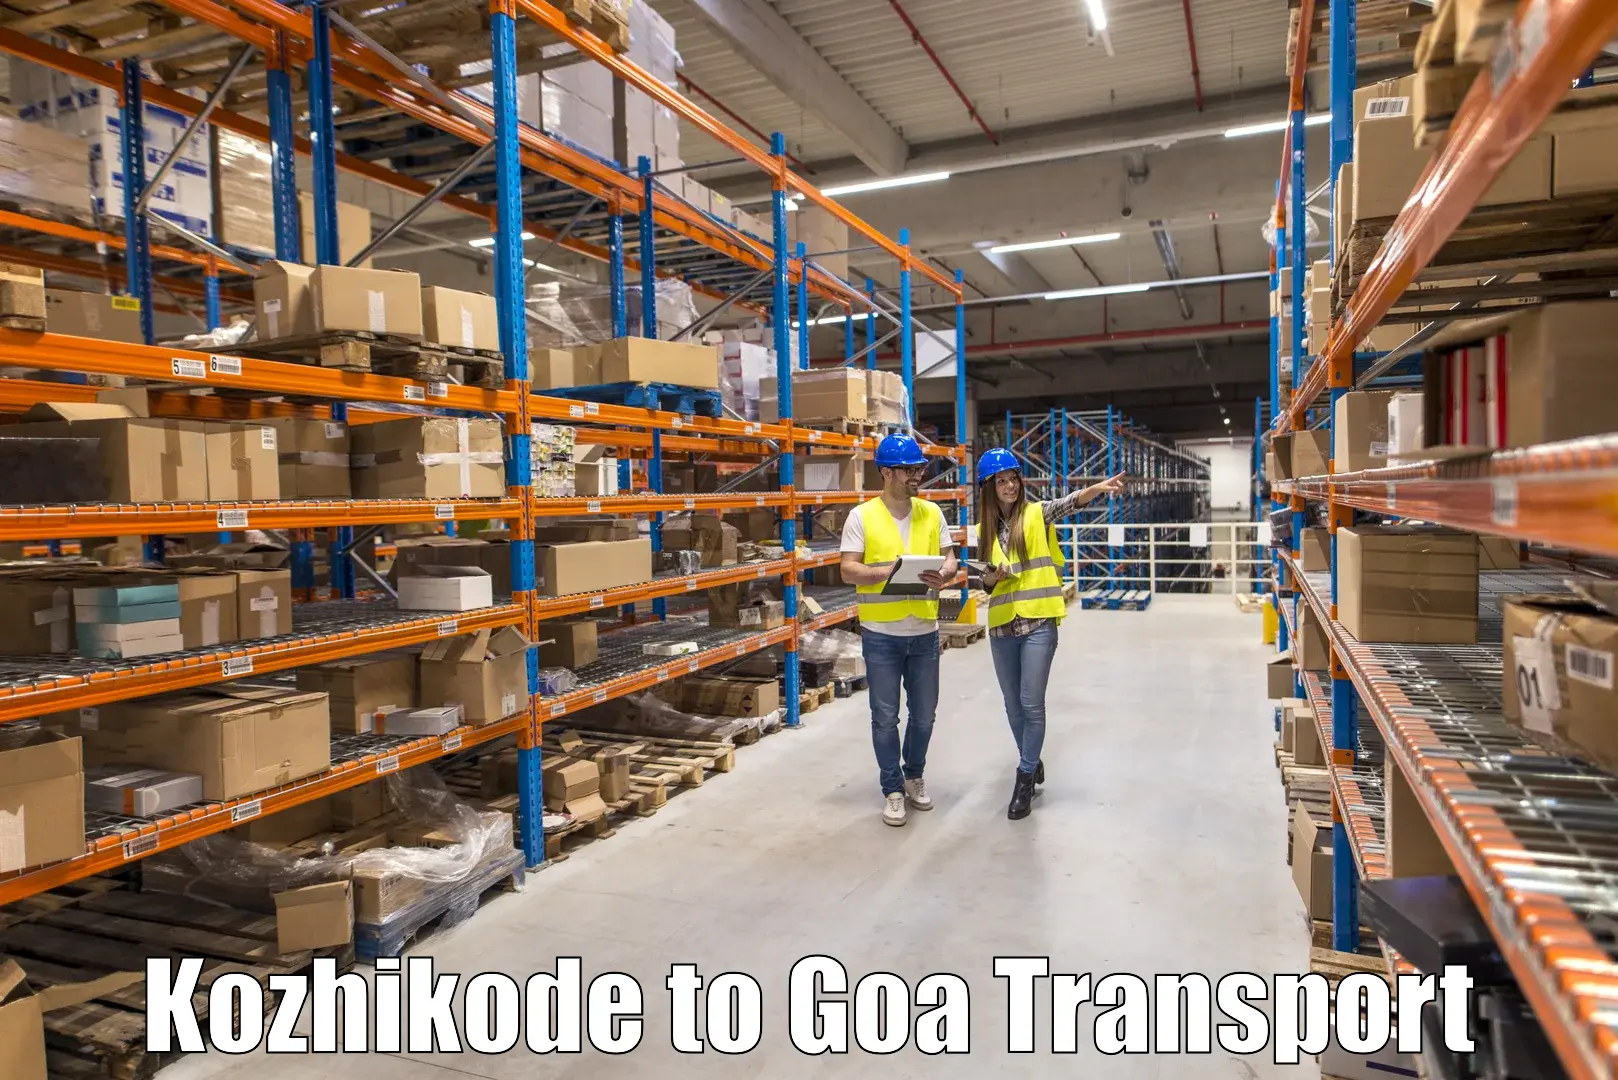 Shipping partner Kozhikode to Margao